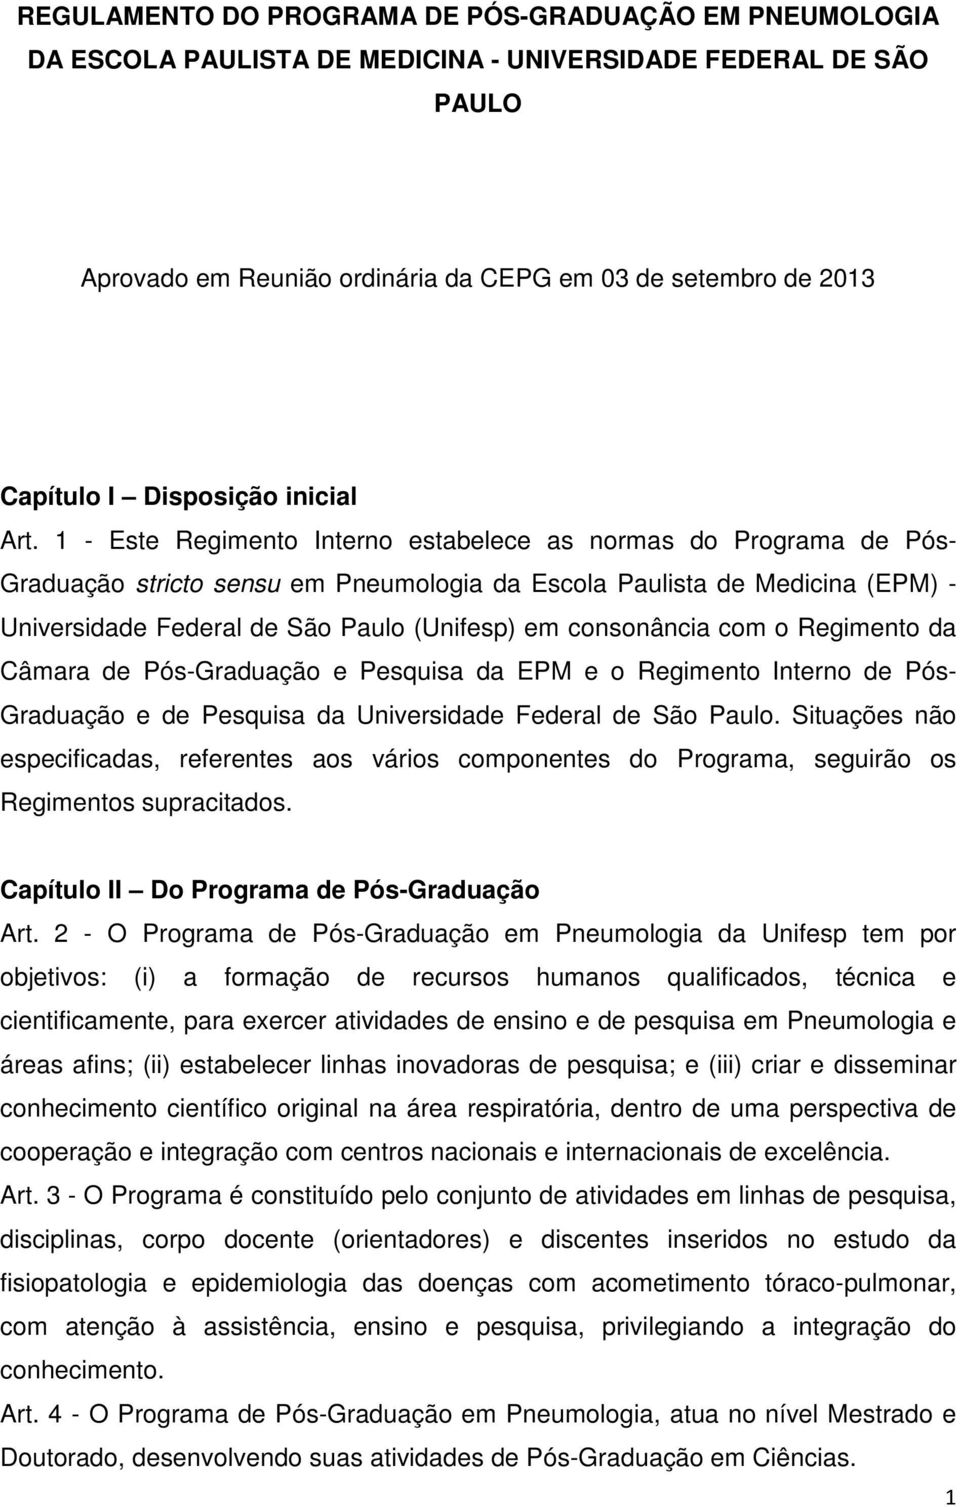 1 - Este Regimento Interno estabelece as normas do Programa de Pós- Graduação stricto sensu em Pneumologia da Escola Paulista de Medicina (EPM) - Universidade Federal de São Paulo (Unifesp) em